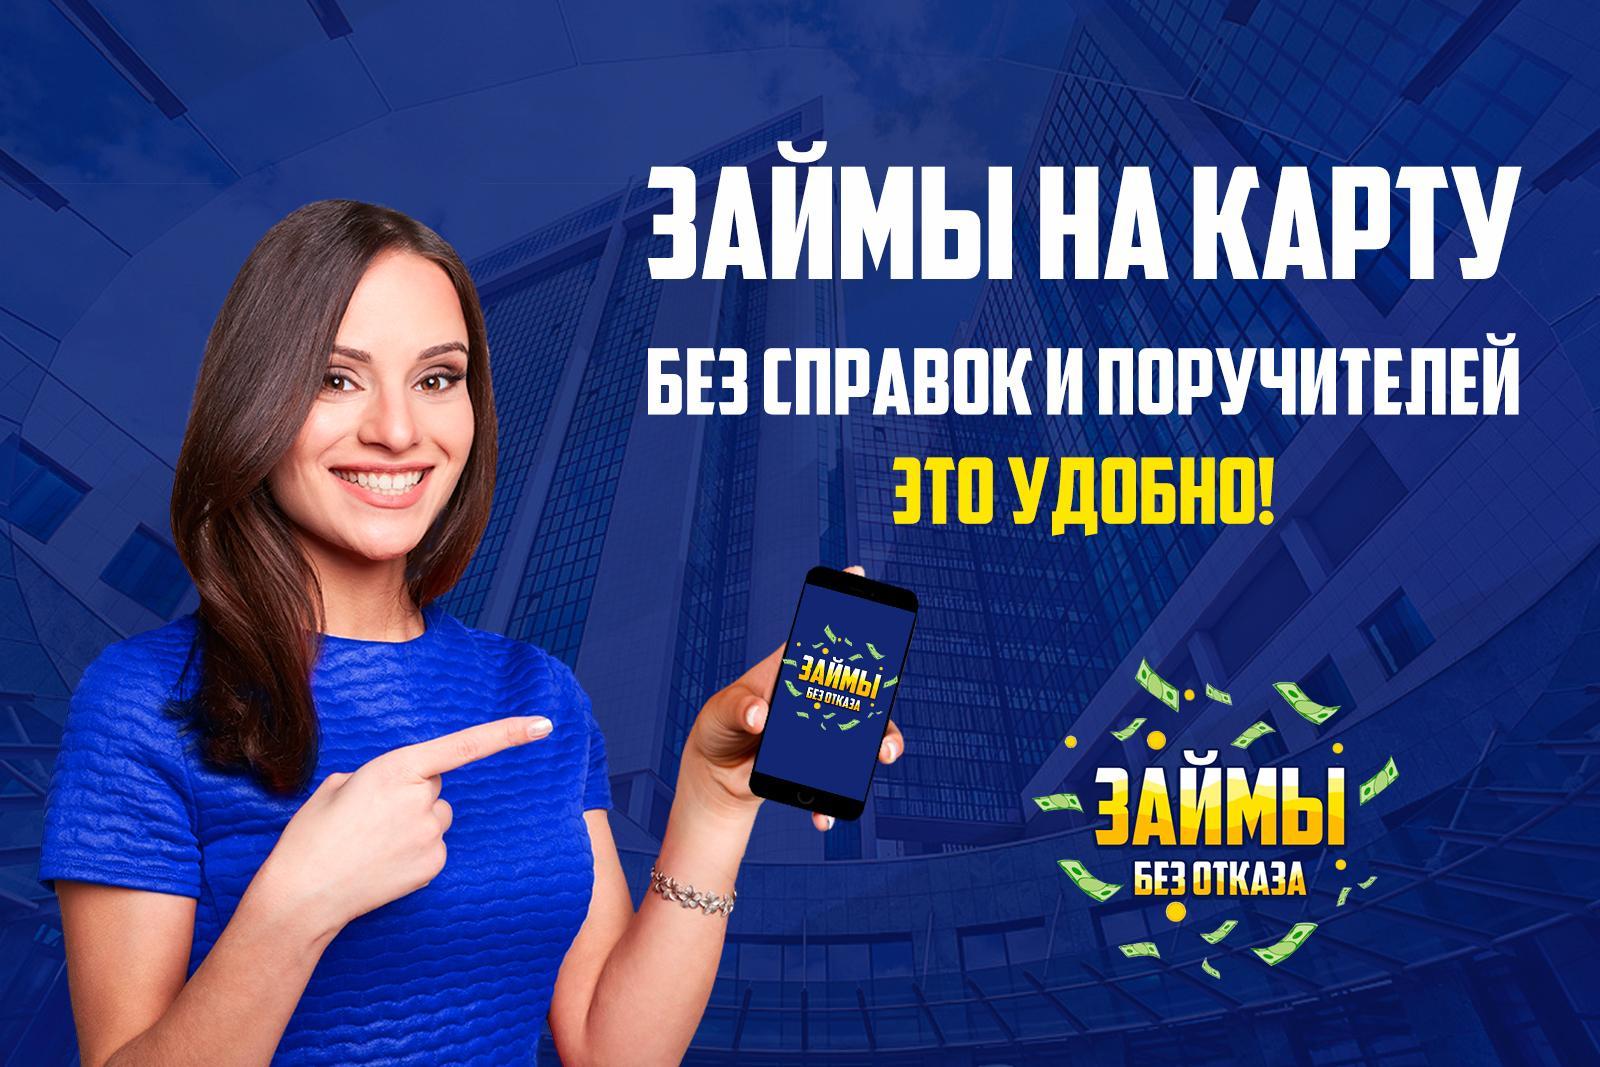 Займ на карту без отказа онлайн рф 15 января антон взял в кредит 3 миллиона рублей на 6 месяцев условия